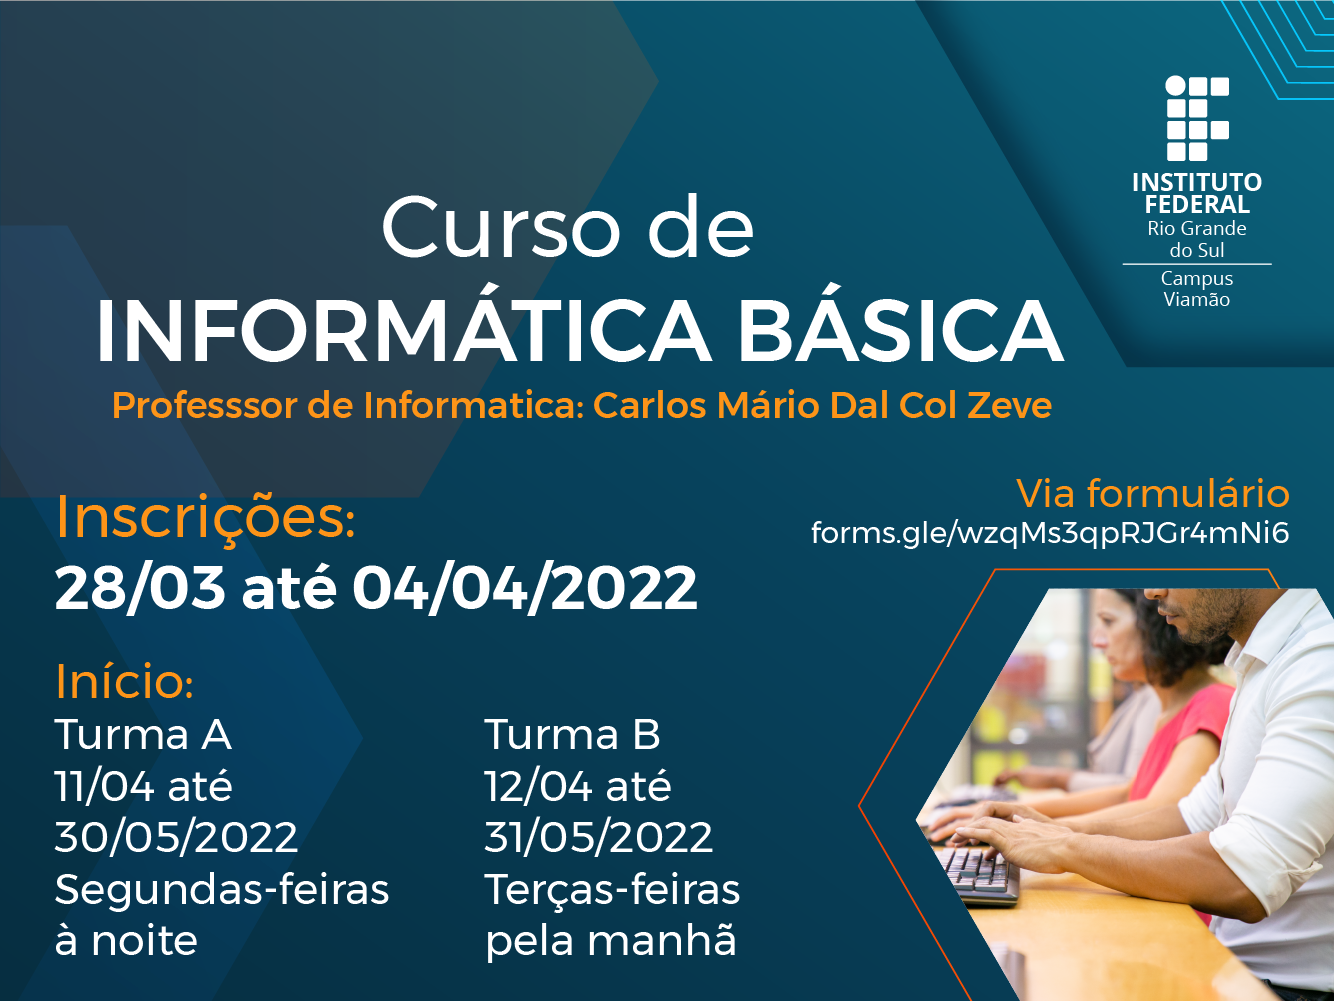 Campus Viamão Oferta Curso De Informática Básica Gratuito Para